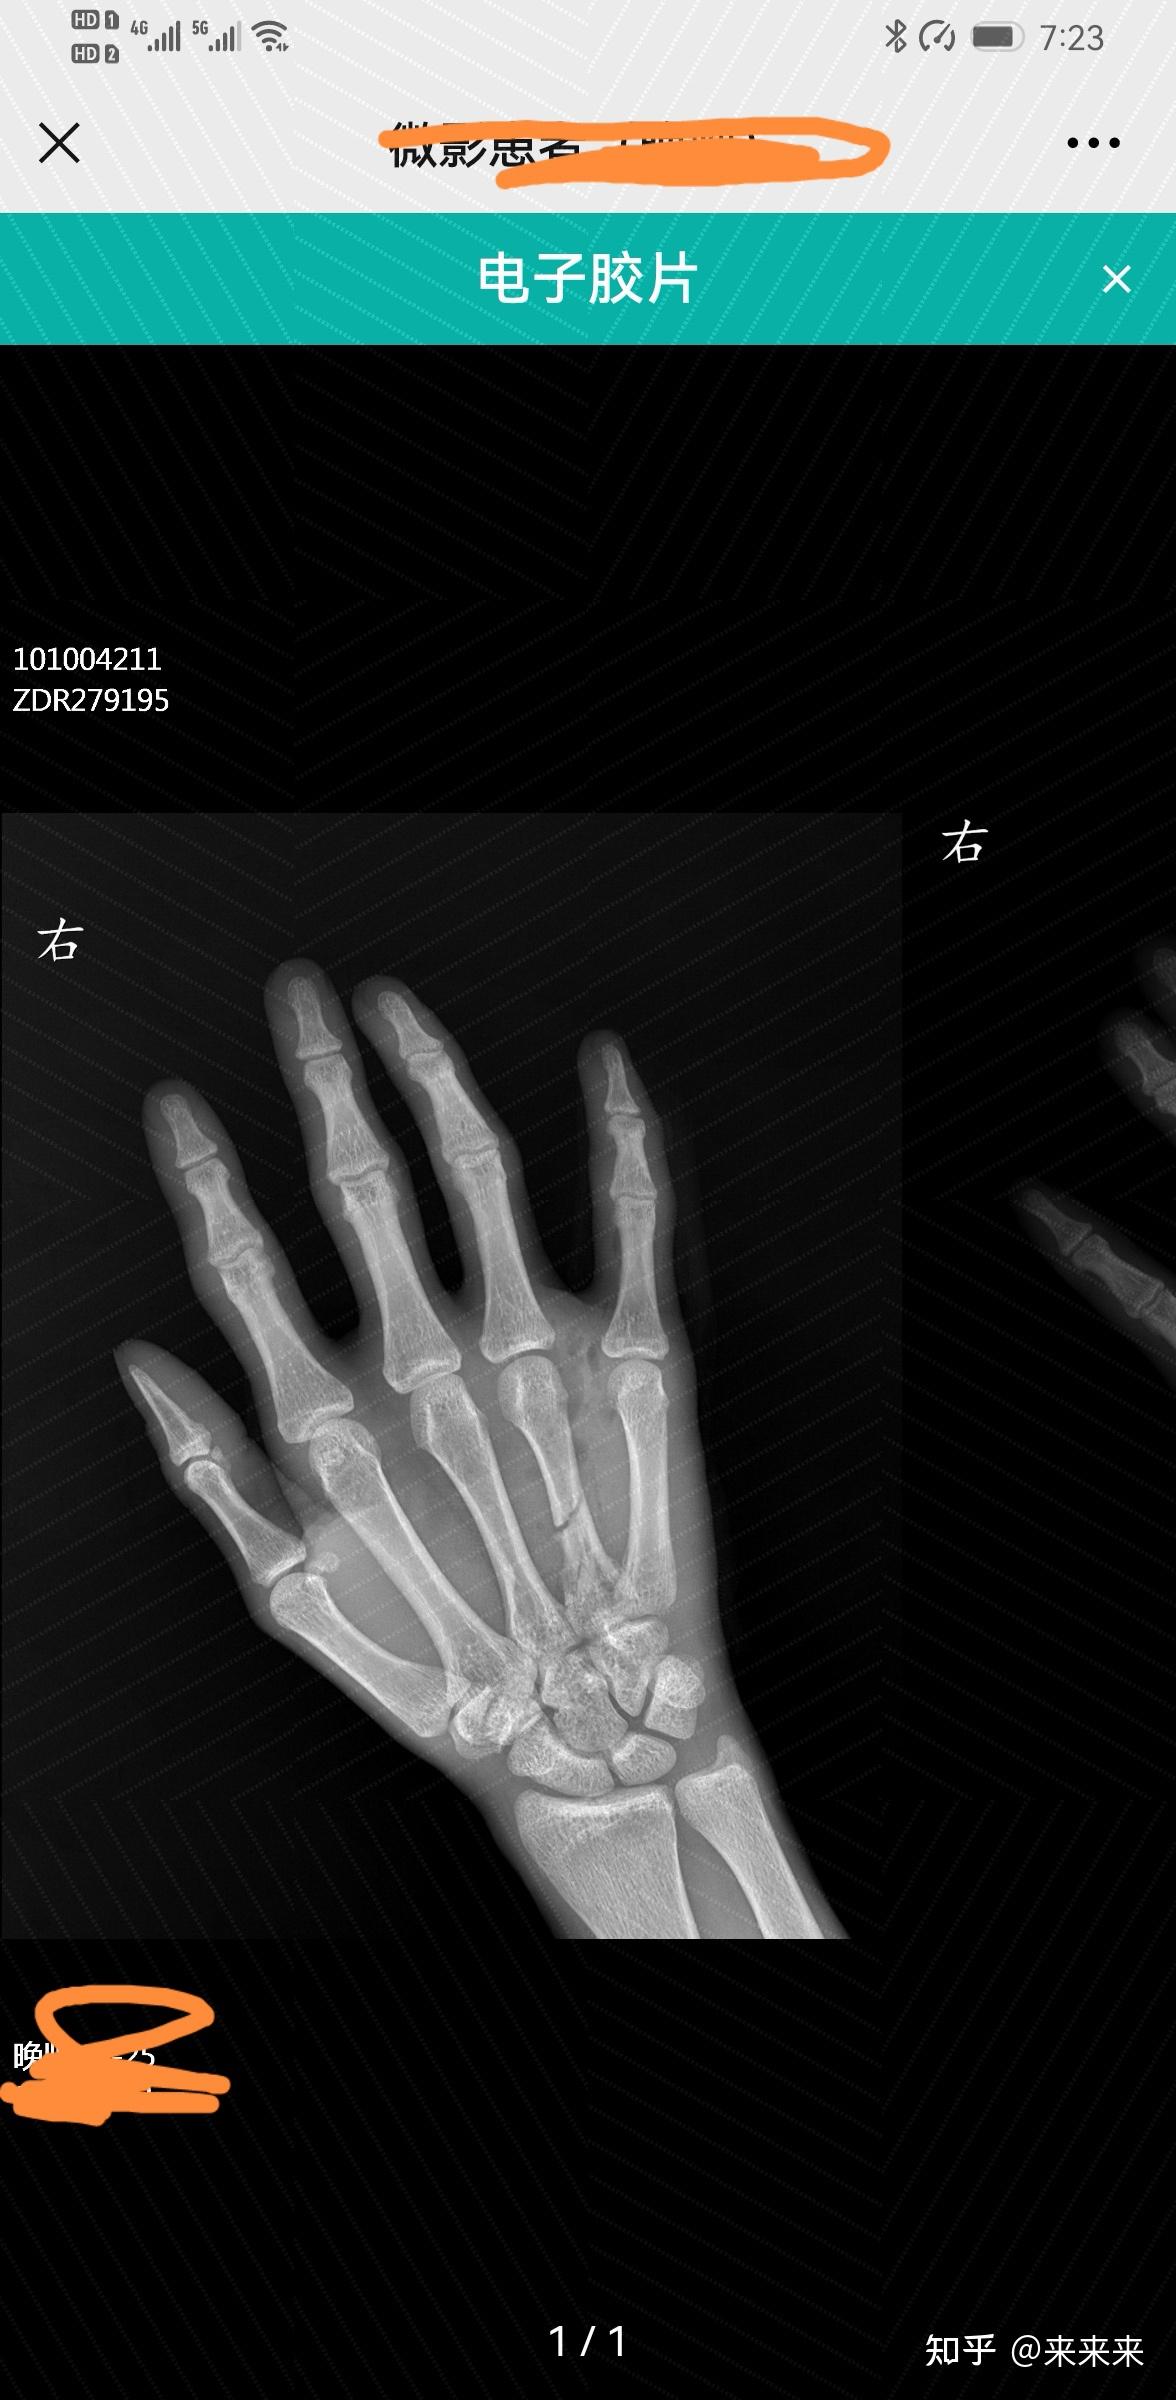 右手第四掌骨骨折保守治疗的第16天,恢复的是否不太理想? 